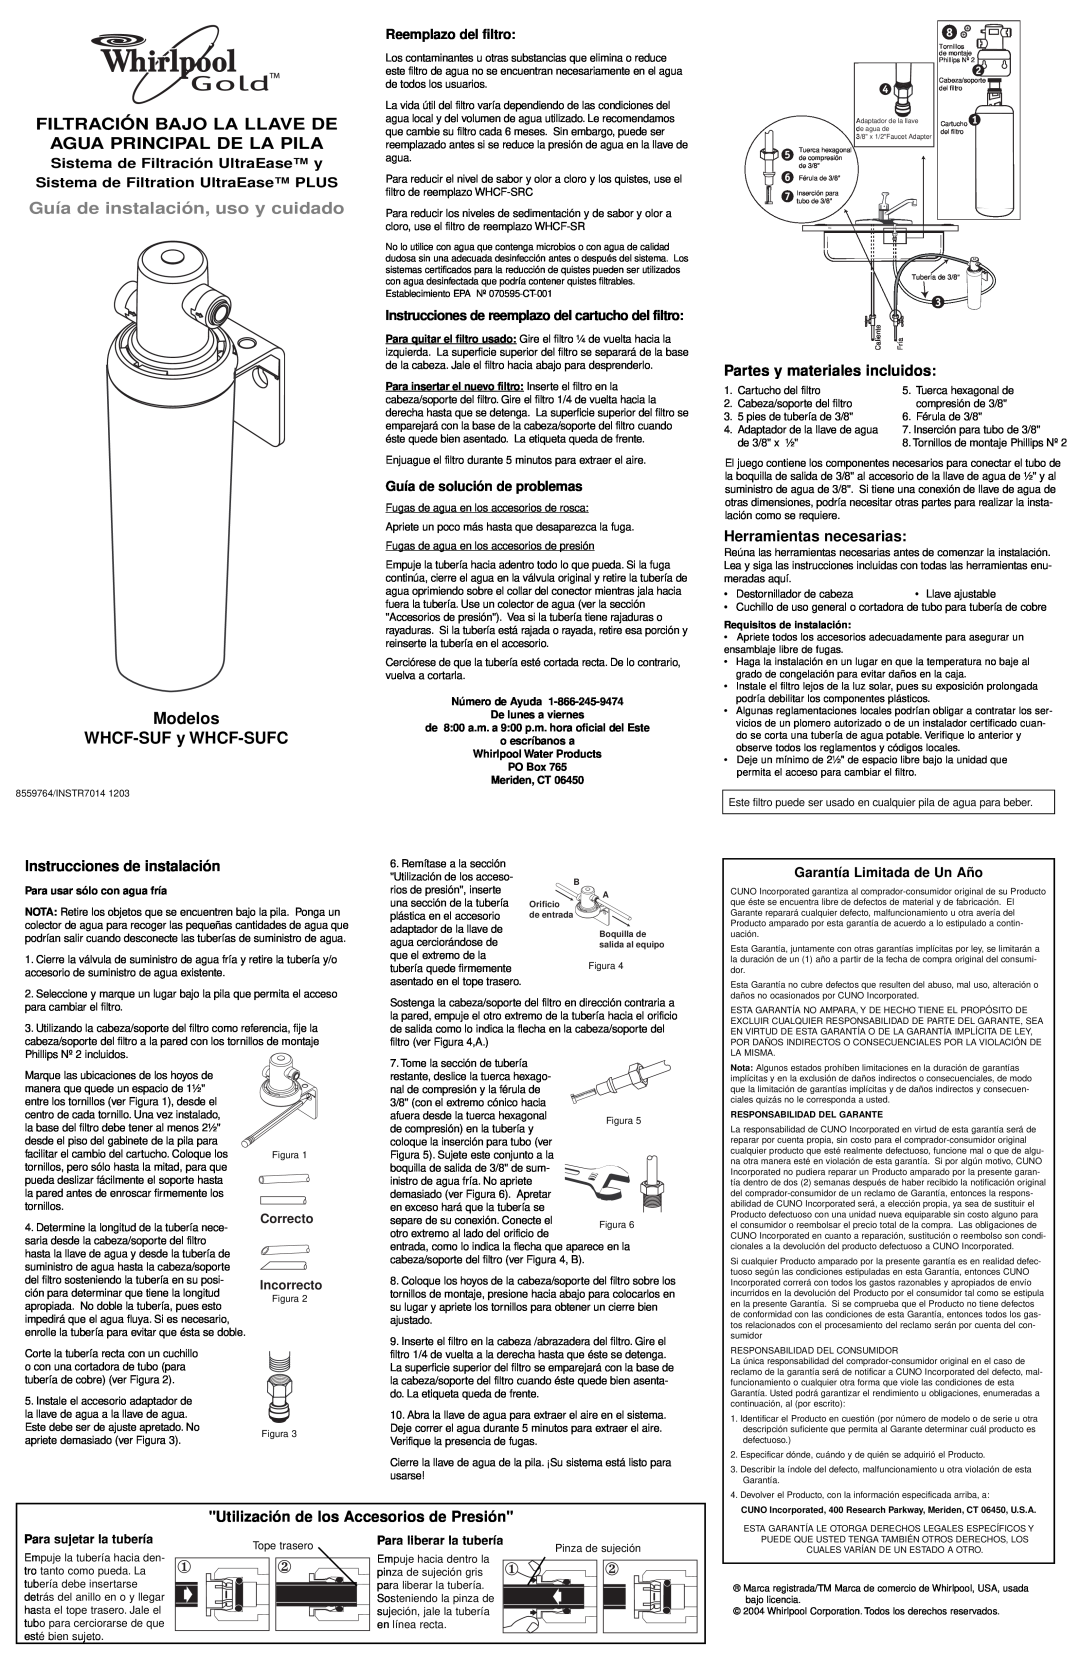 Whirlpool Guía de instalación, uso y cuidado, Modelos WHCF-SUFy WHCF-SUFC, Instrucciones de instalación, Meriden, CT 